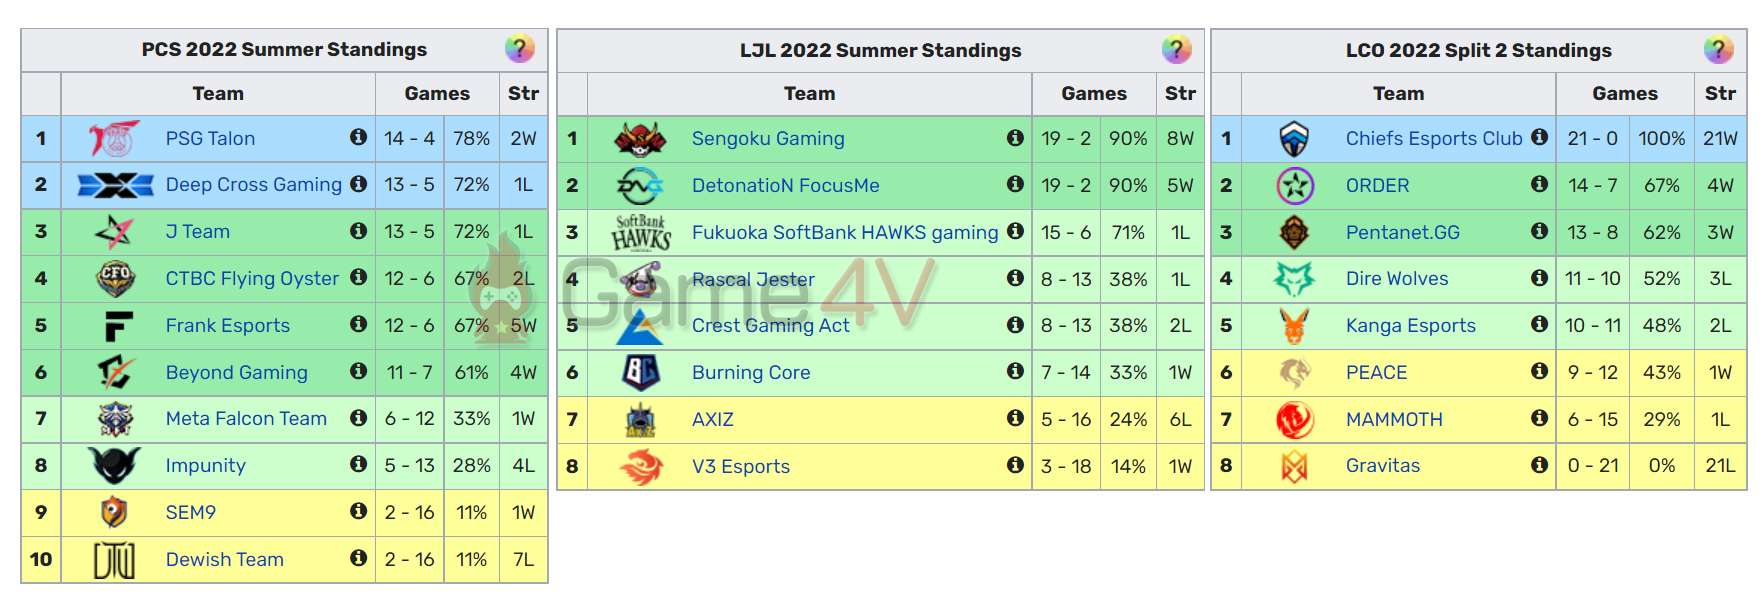 Cả 3 khu vực PCS, LJL và LCO đều có những đội tuyển ở top dưới BXH bị "out trình" bởi phần còn lại của giải đấu.